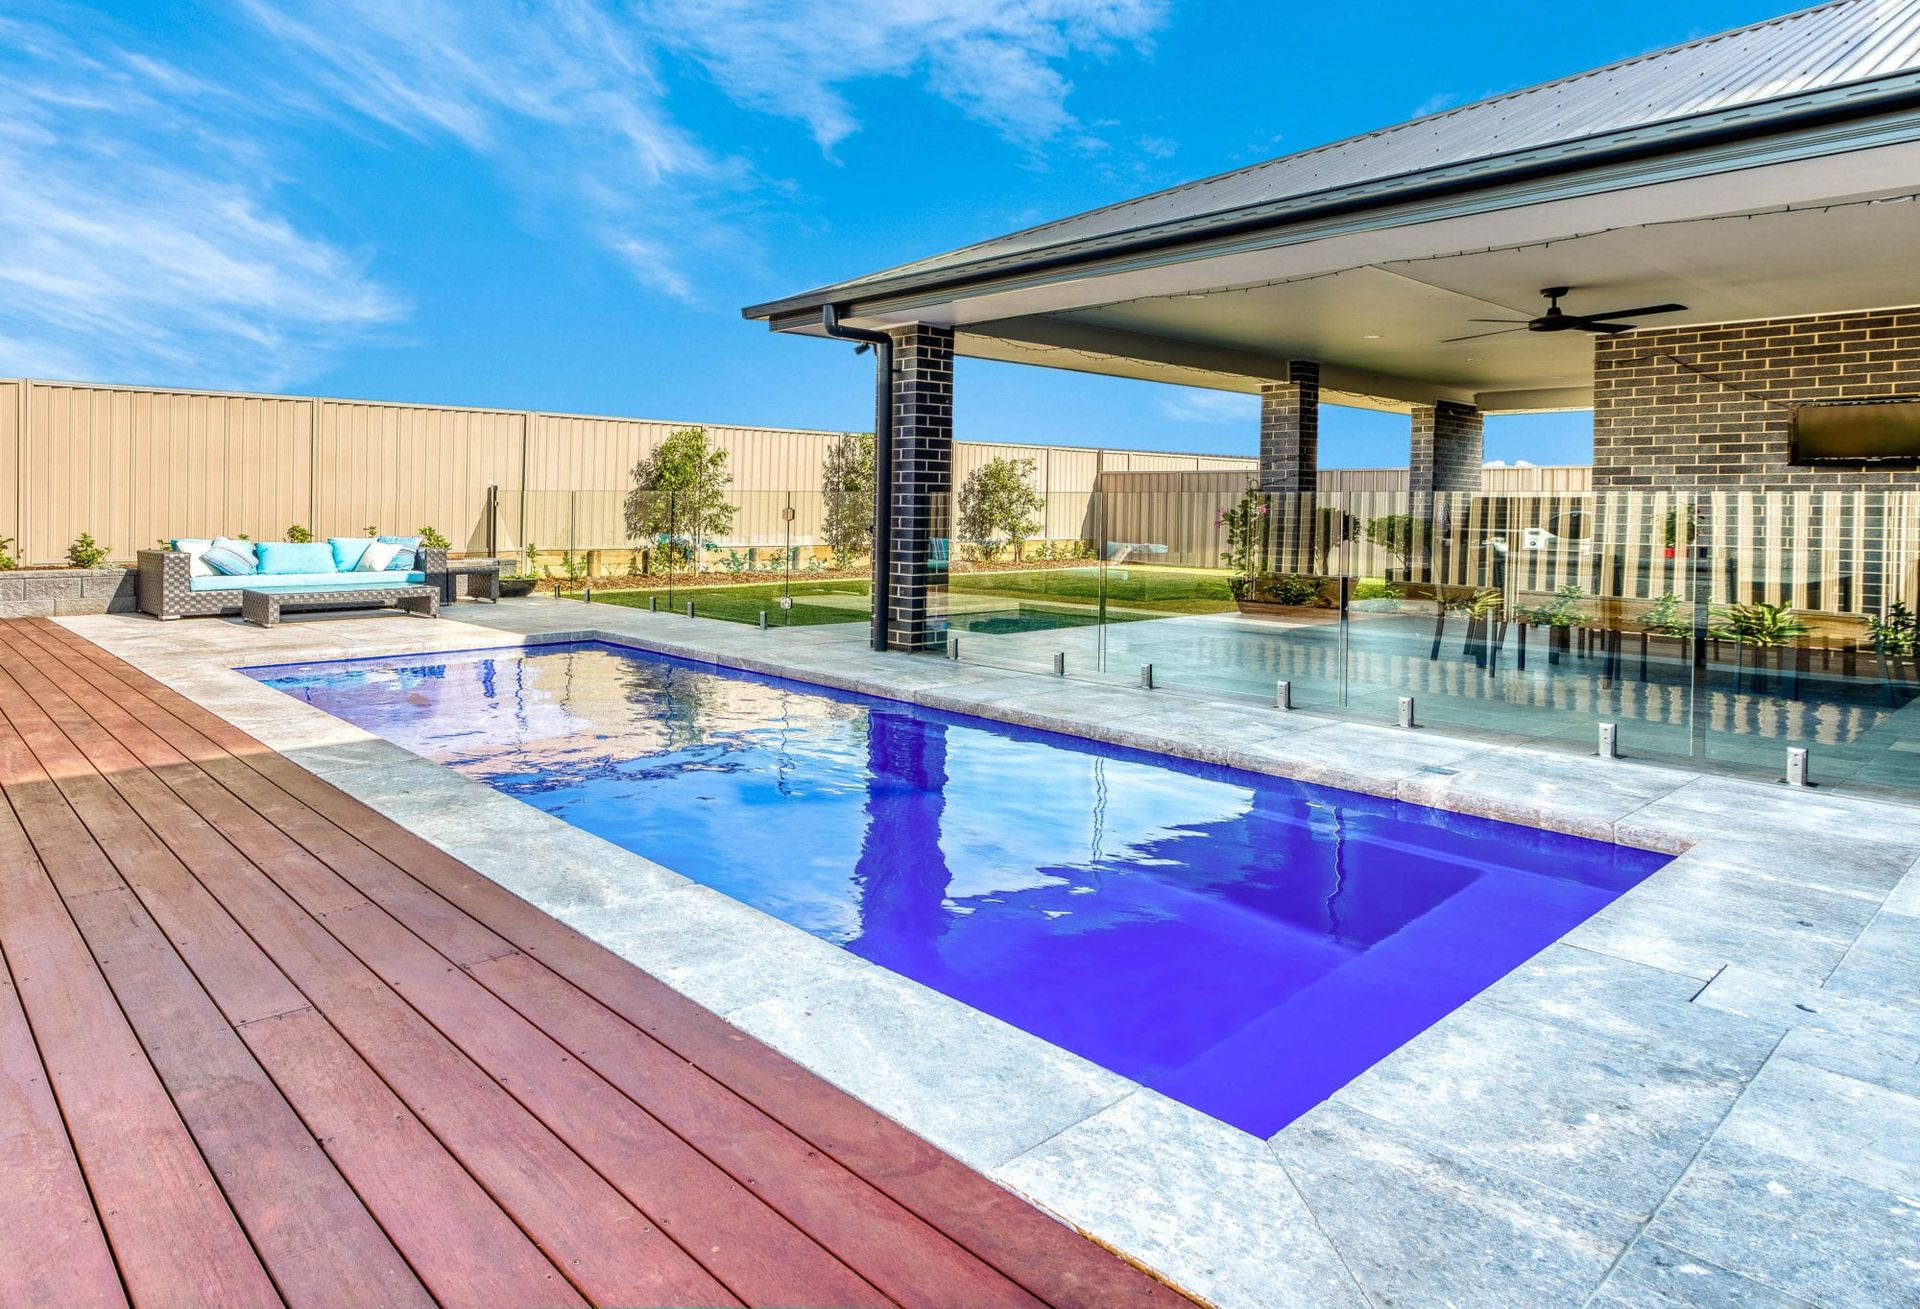 Avanti Pool design by Masterbuilt Pools in Port Macquarie